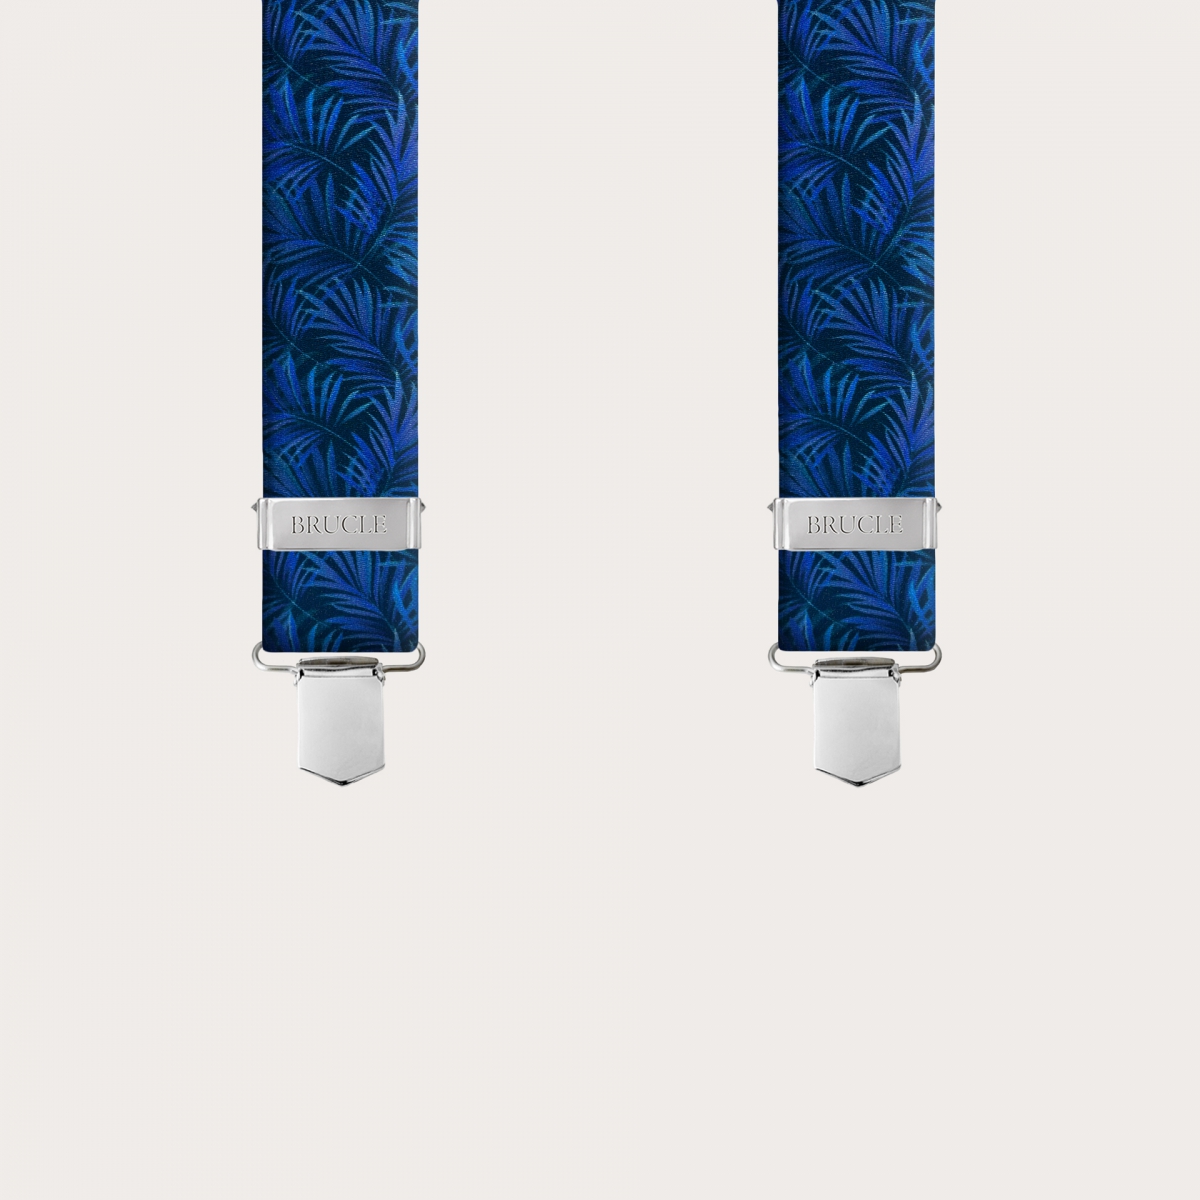 BRUCLE Elastische Hosenträger in Satin-Optik, blau mit Palmblättern